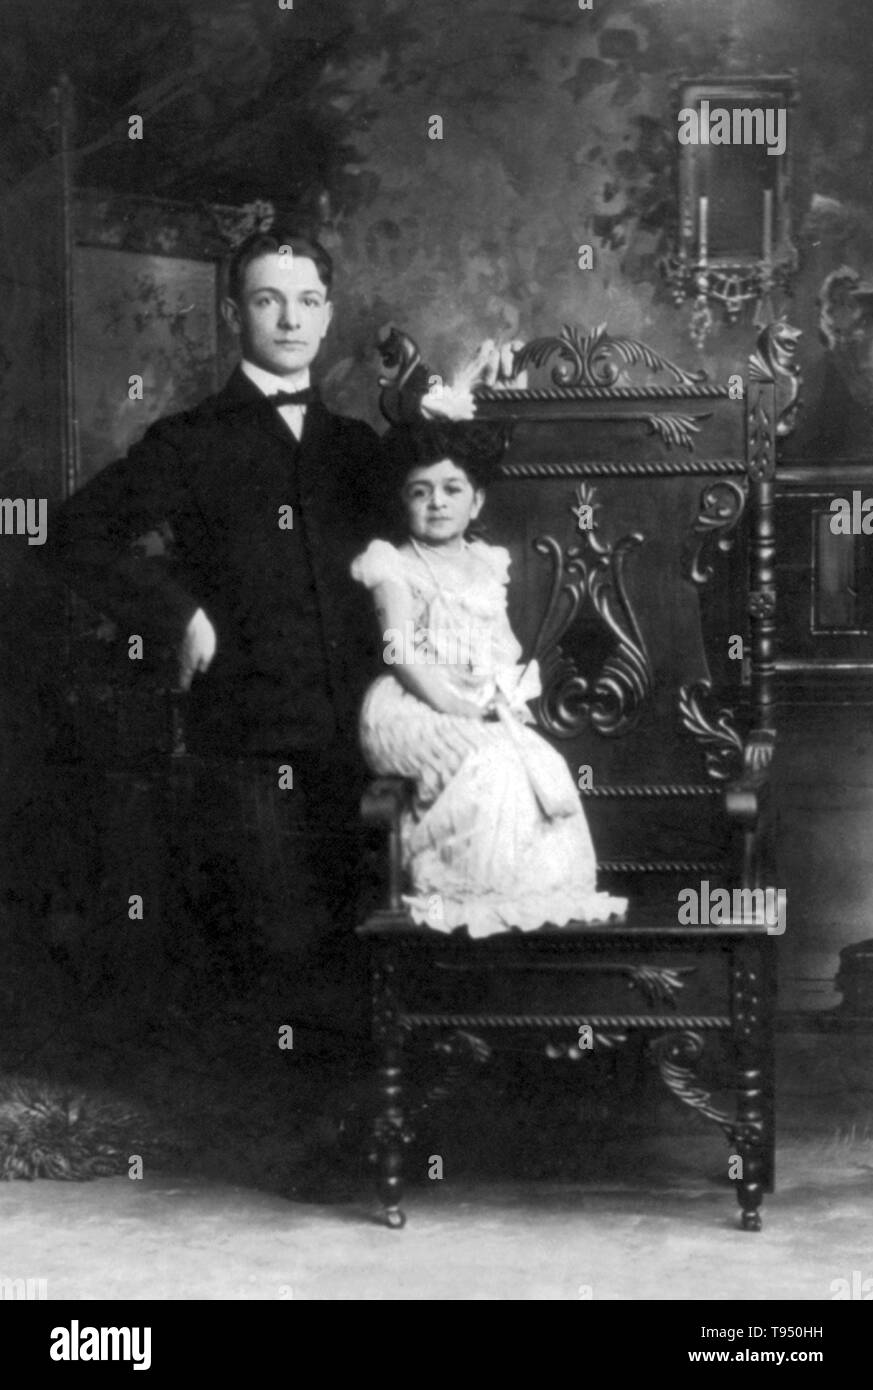 Titel: 'Mrs. Anthony C. Woeckener von Erie, Pennsylvania, besser wie Chiquita, die Puppe Königin" auf dem Arm von Stuhl sitzen, mit einem normalen Größe junger Mann steht neben. Chiquita, die Puppe Königin war entweder in Kuba oder Mexiko geboren. Sie war ein Entertainer mit dem Reisen Bostock-Ferari Karneval. Einige vermuten, dass ihr Ehe 1901 im Alter von 31 bis 17 Jahre alten Woeckener für Werbung gemacht wurde. Chiquita war ein Hit bei der Panamerikanischen Ausstellung in 1901. Stockfoto